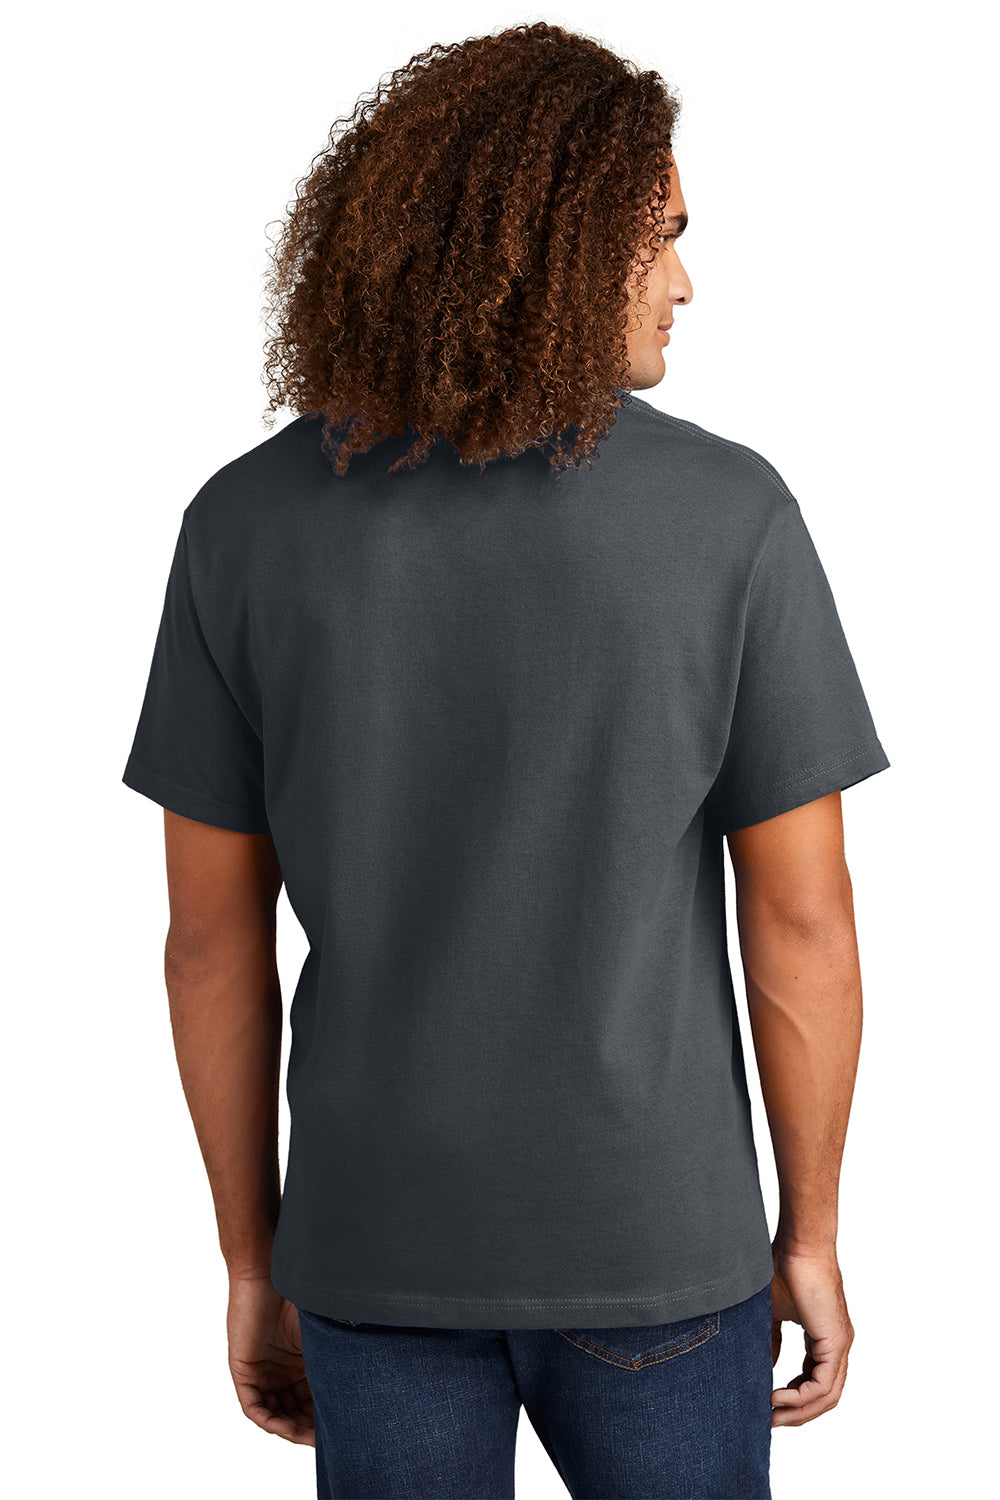 American Apparel 1301/AL1301 Mens Short Sleeve Crewneck T-Shirt Charcoal Grey Model Back